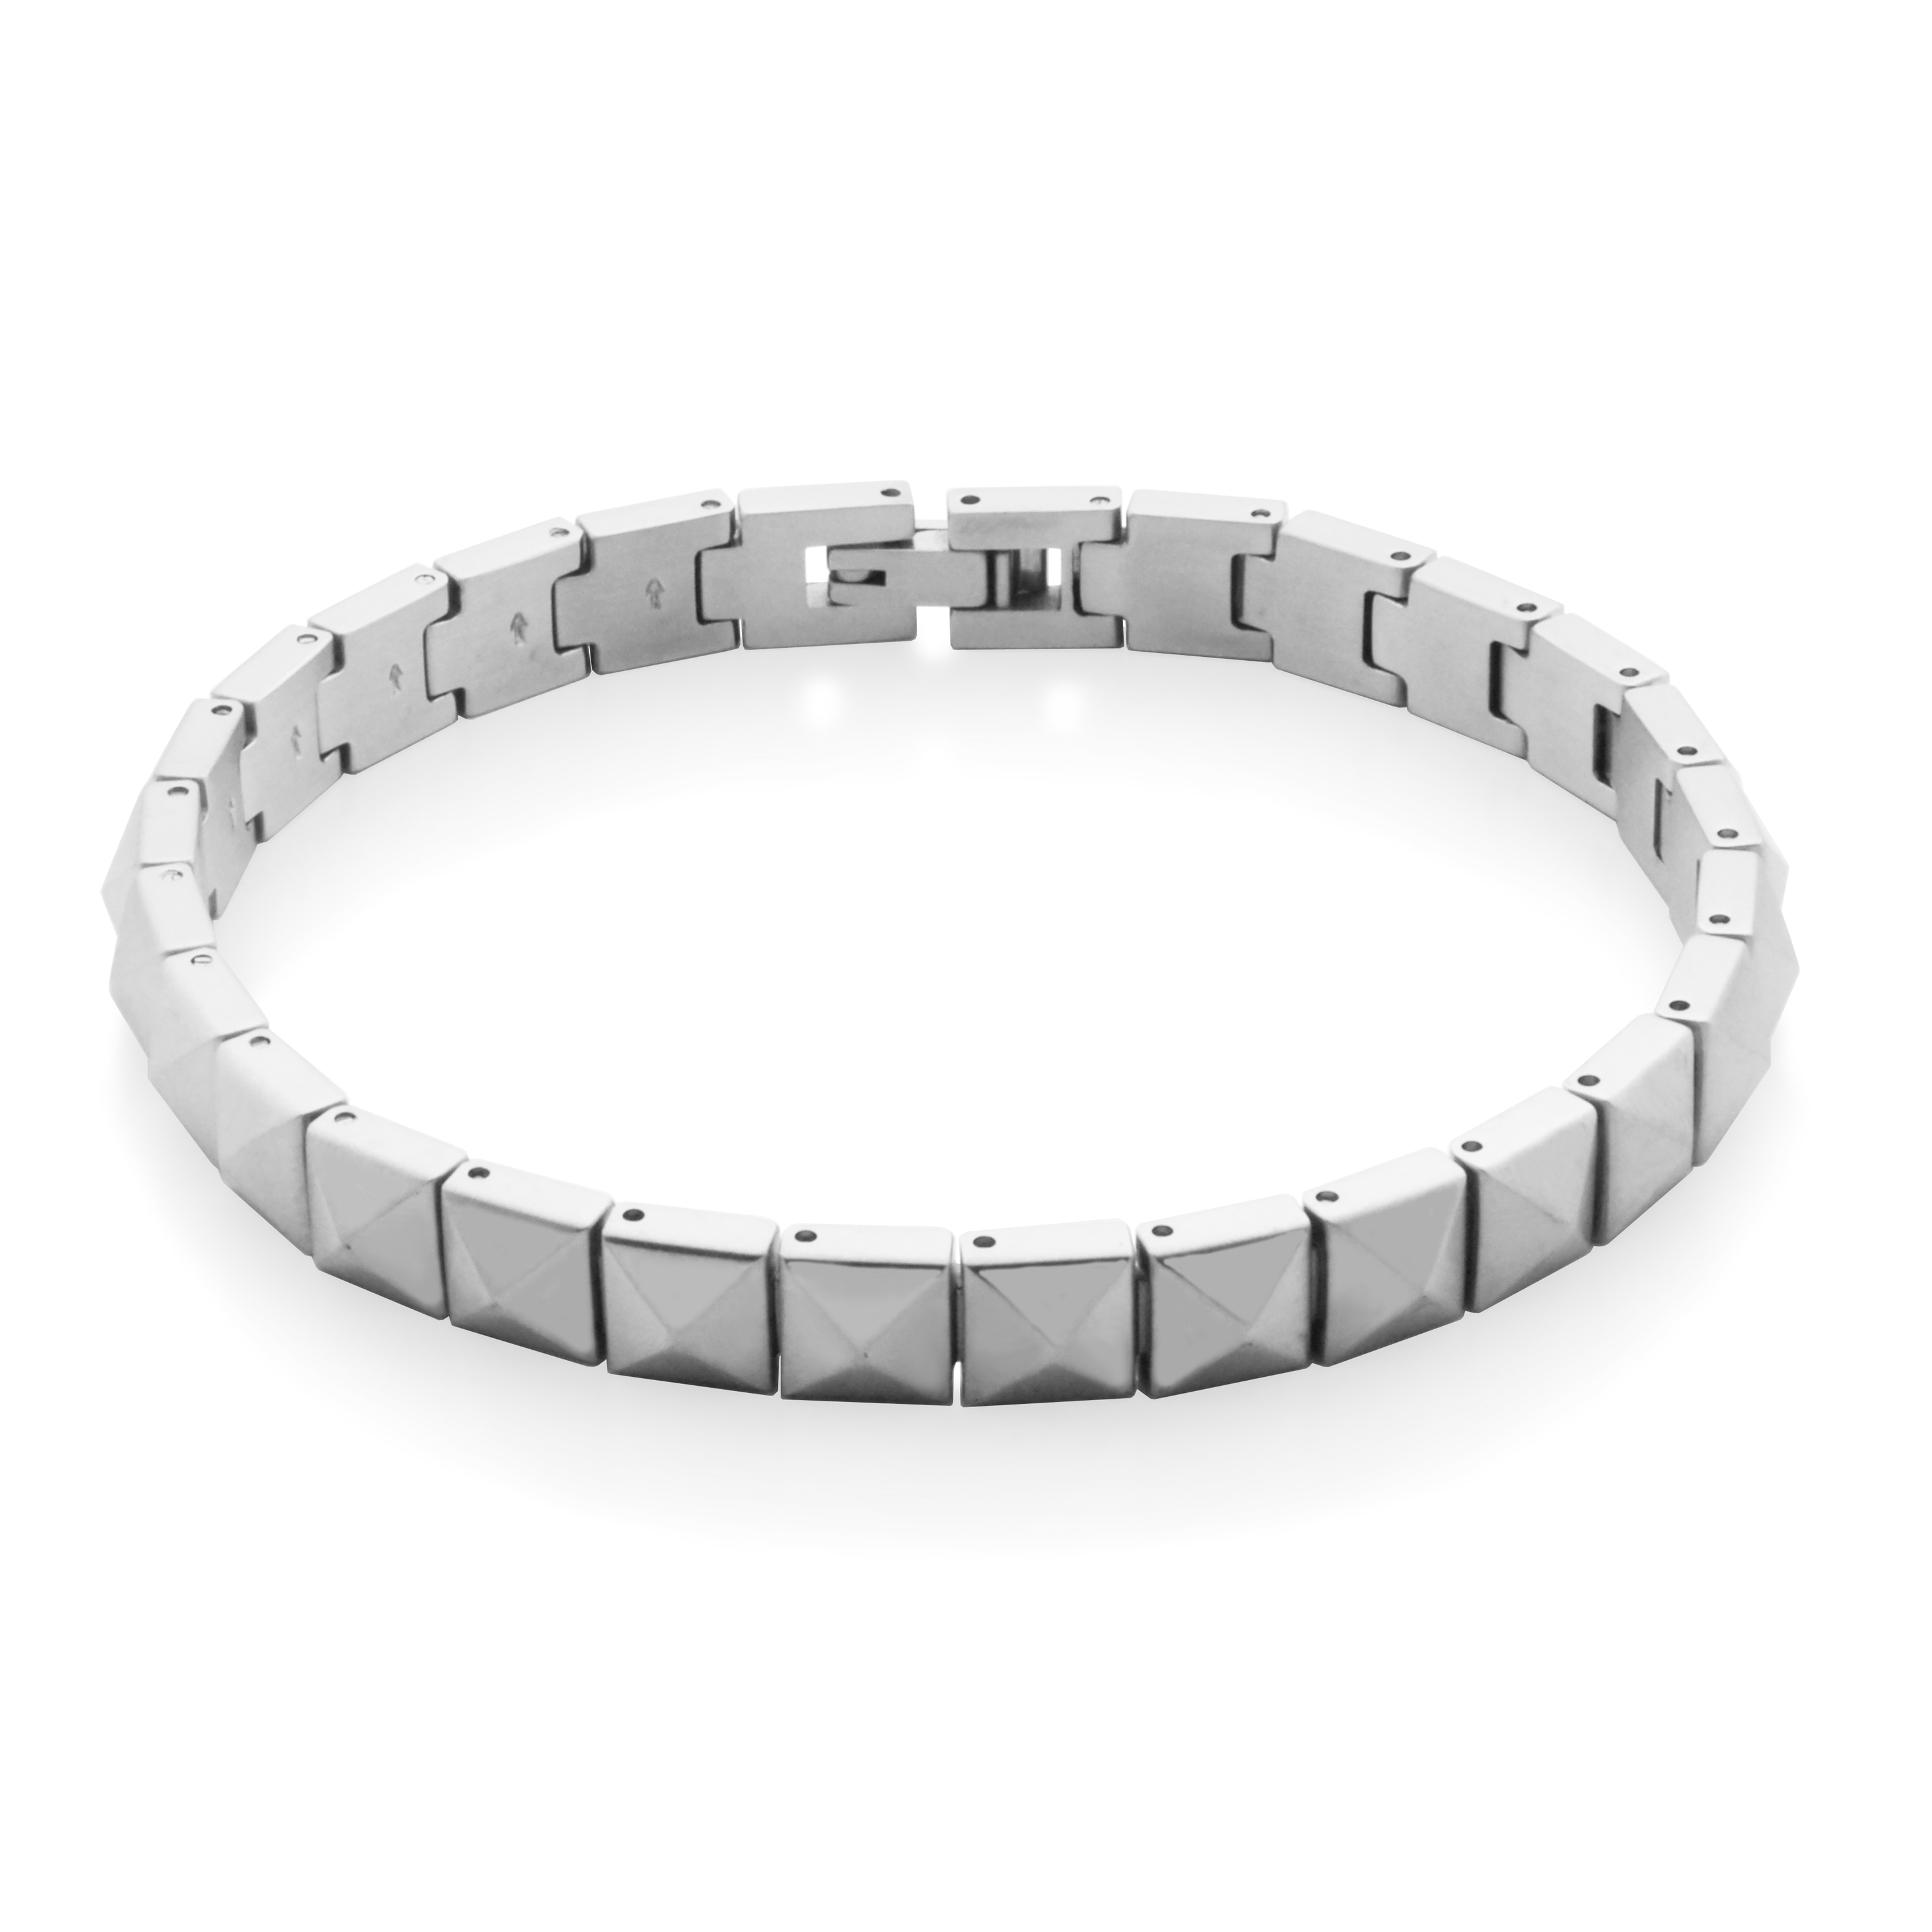 Steelx Men's Stainless Steel Spike Bracelet - Online Shopping for 